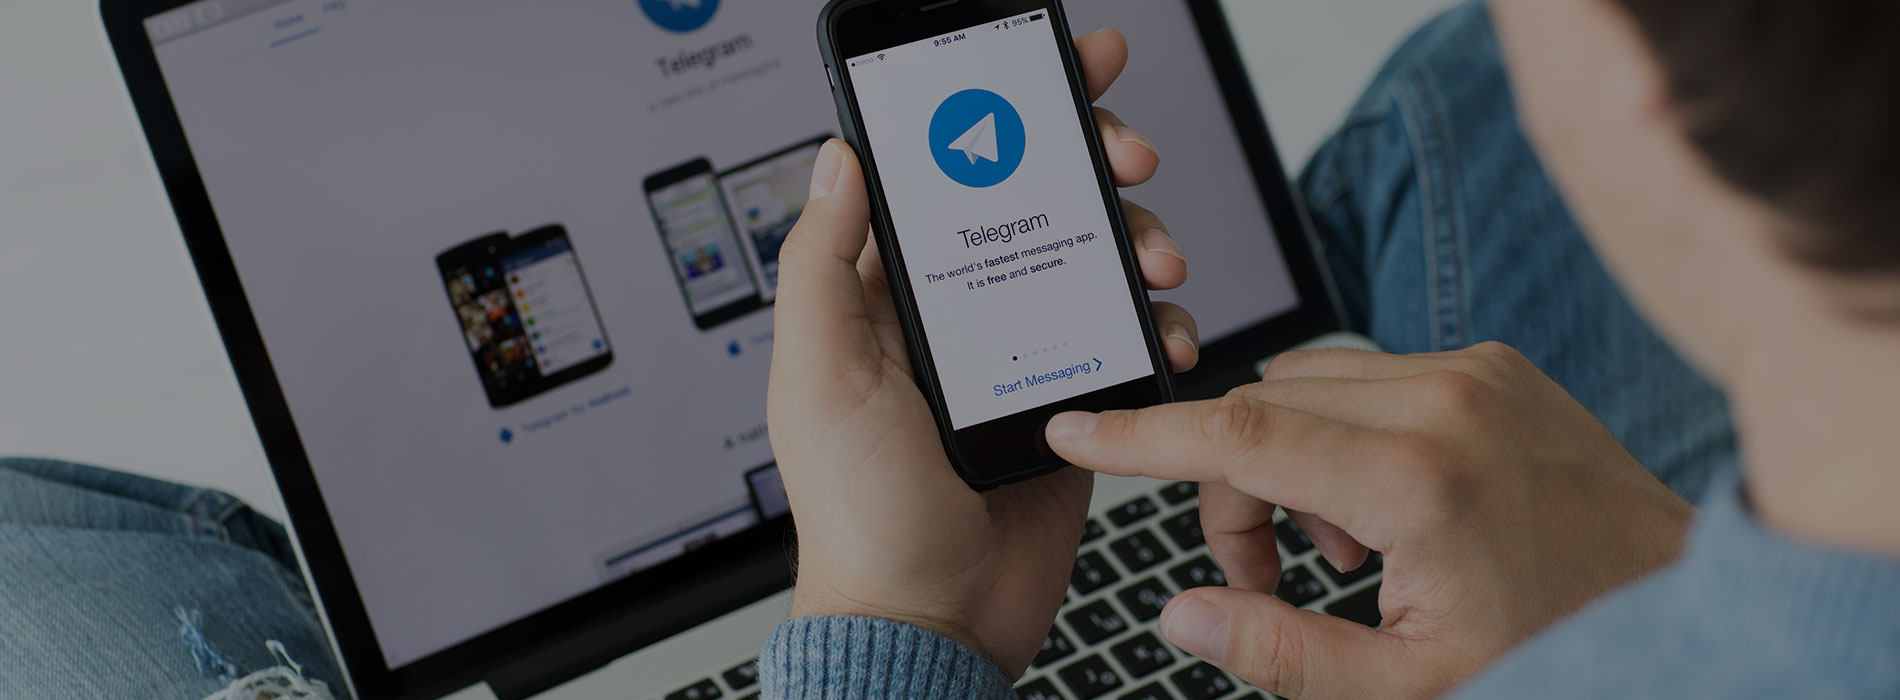 Размещение рекламы в Телеграм: все, что нужно знать для успешной рекламной кампании